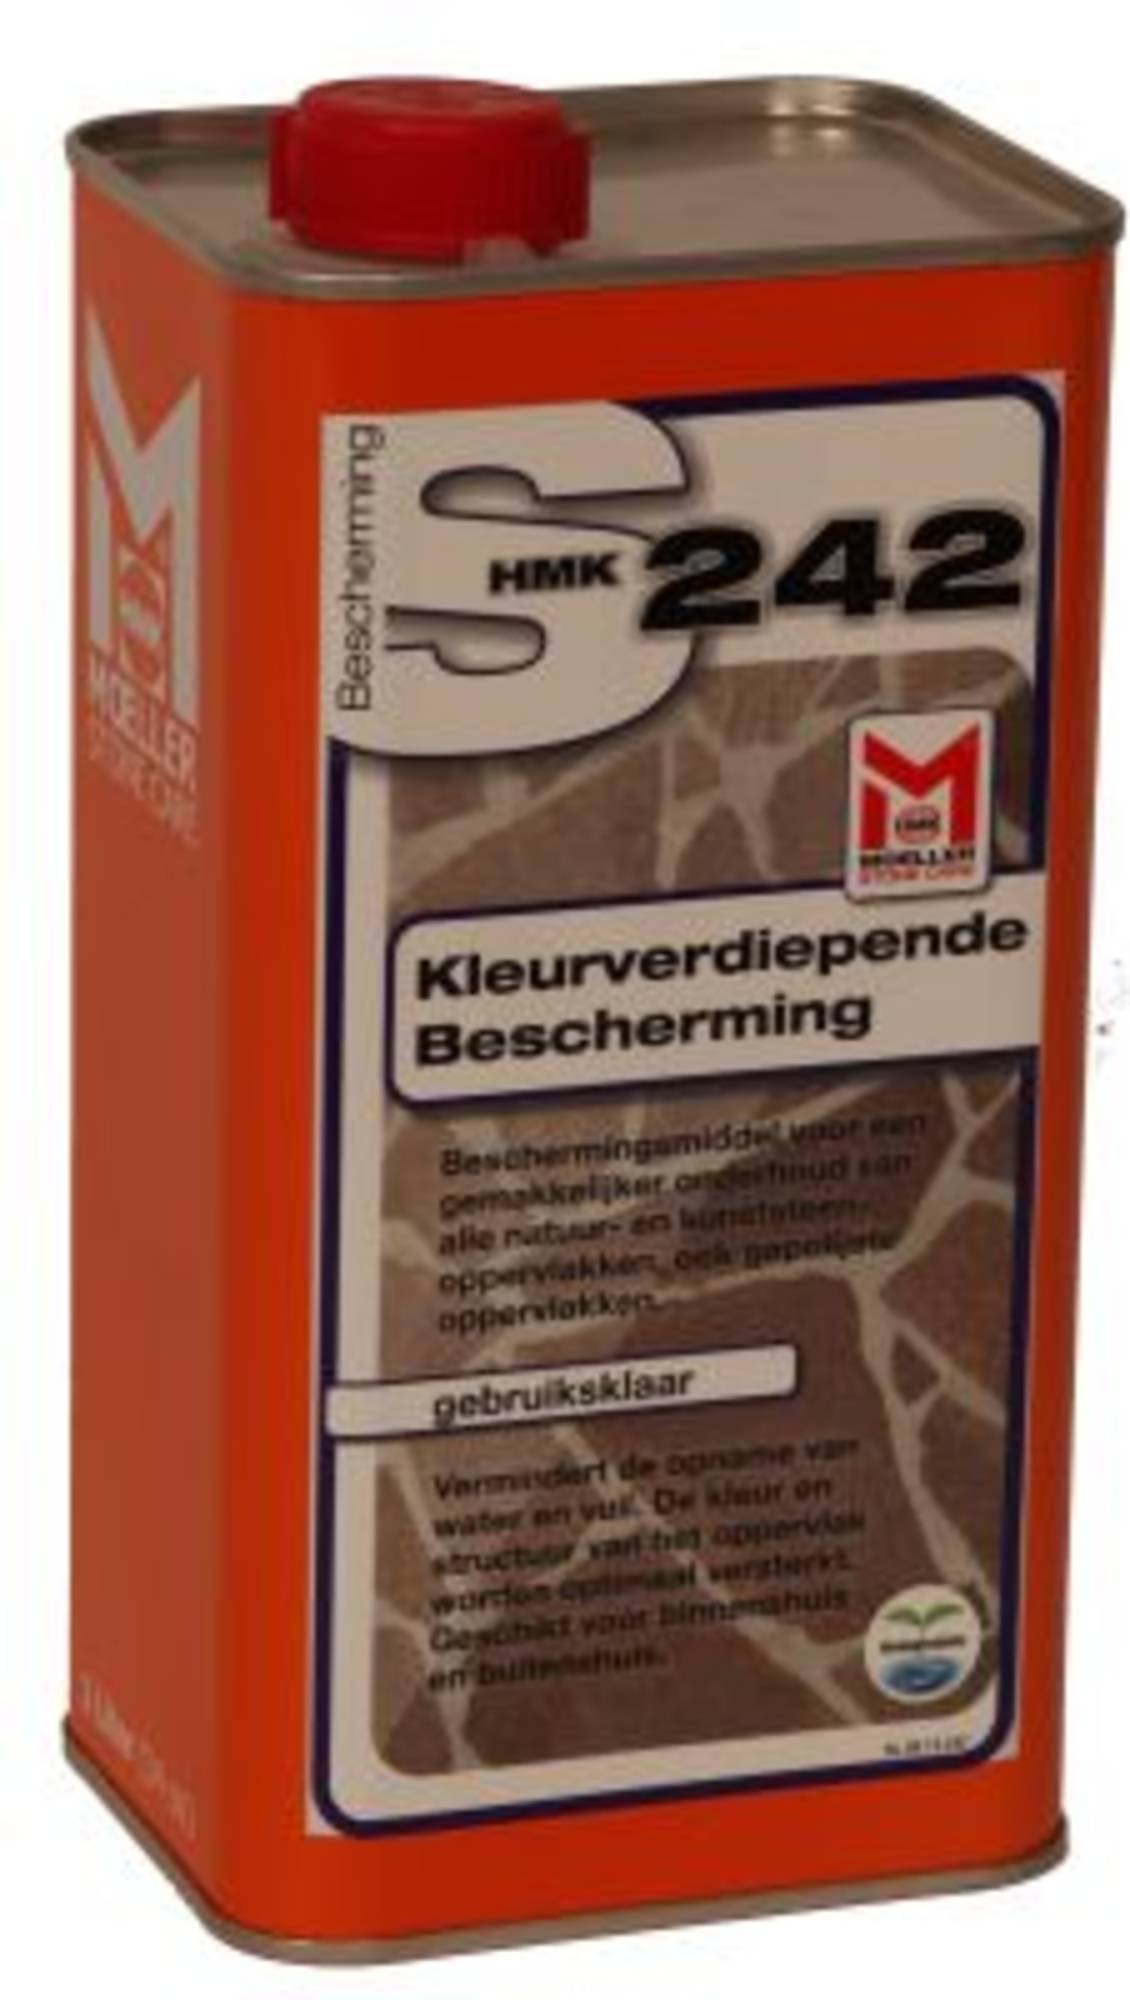 Hmk P319 Marmer- en granietpolish flacon 1 ltr polish voor marmer en graniet